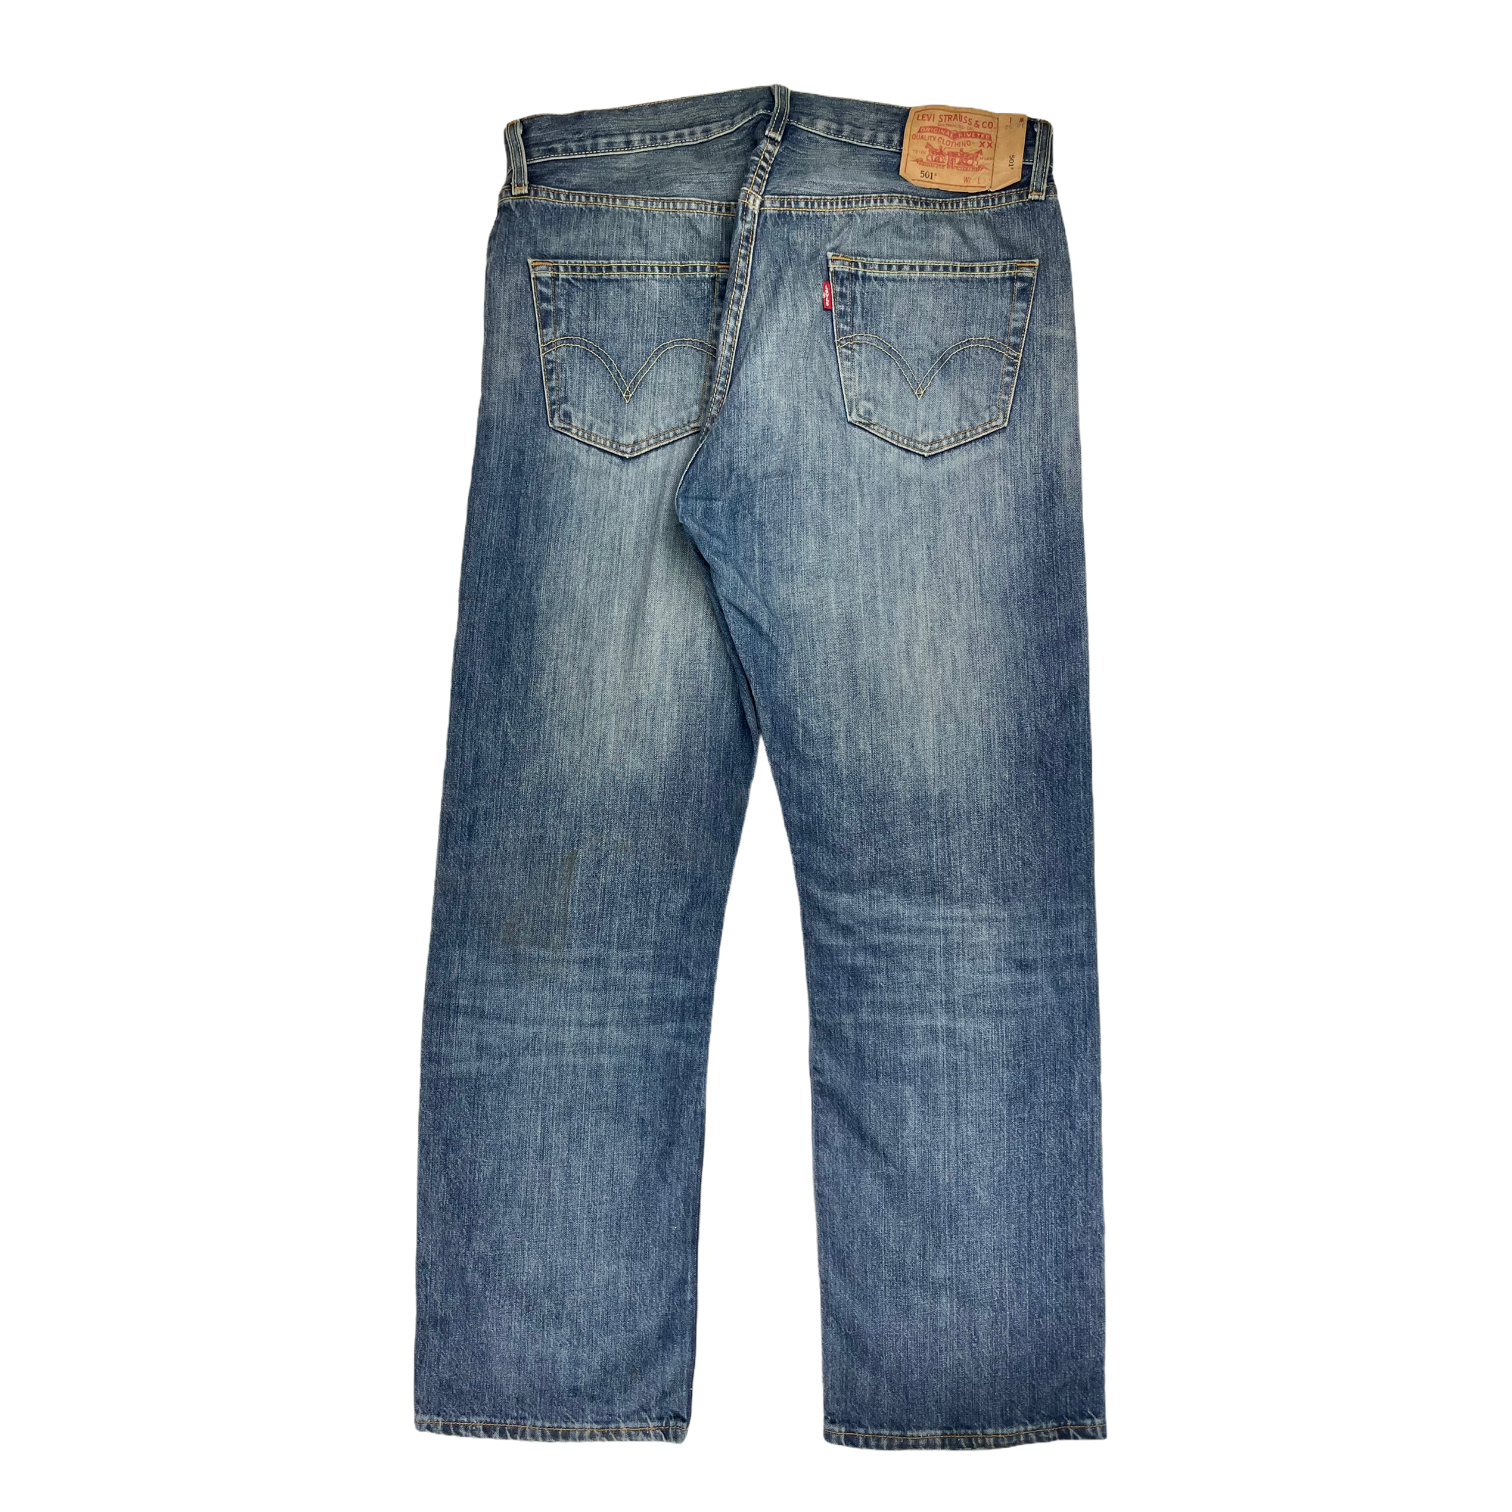 Vintage Levi's jeans 501 - 34/32 - Restorecph